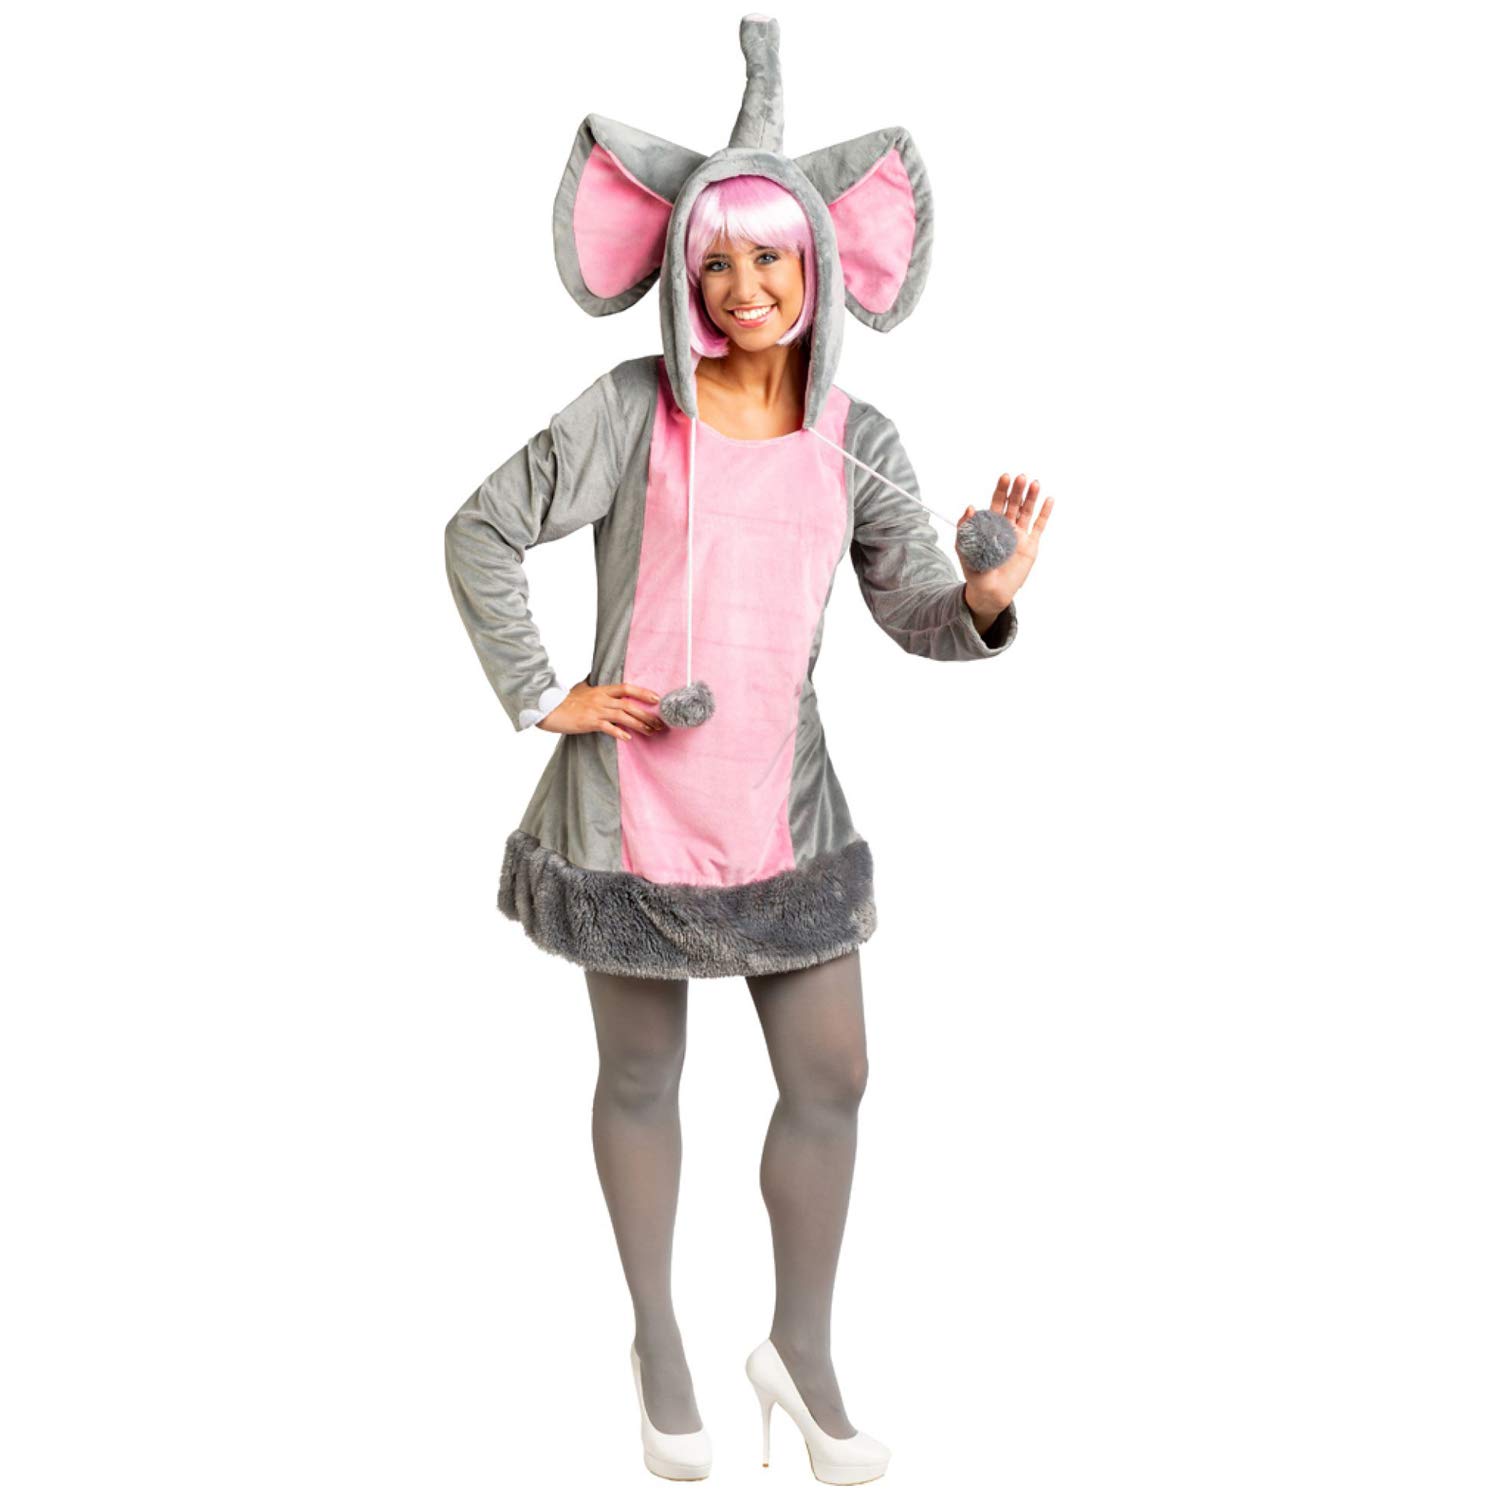 Amakando Hübsches Elefanten-Dress für Erwachsene/Grau-Rosa 38/40 (S/M) / Plüschige Damen-Verkleidung Dickhäuter/Perfekt geeignet zu Fasching & Karneval